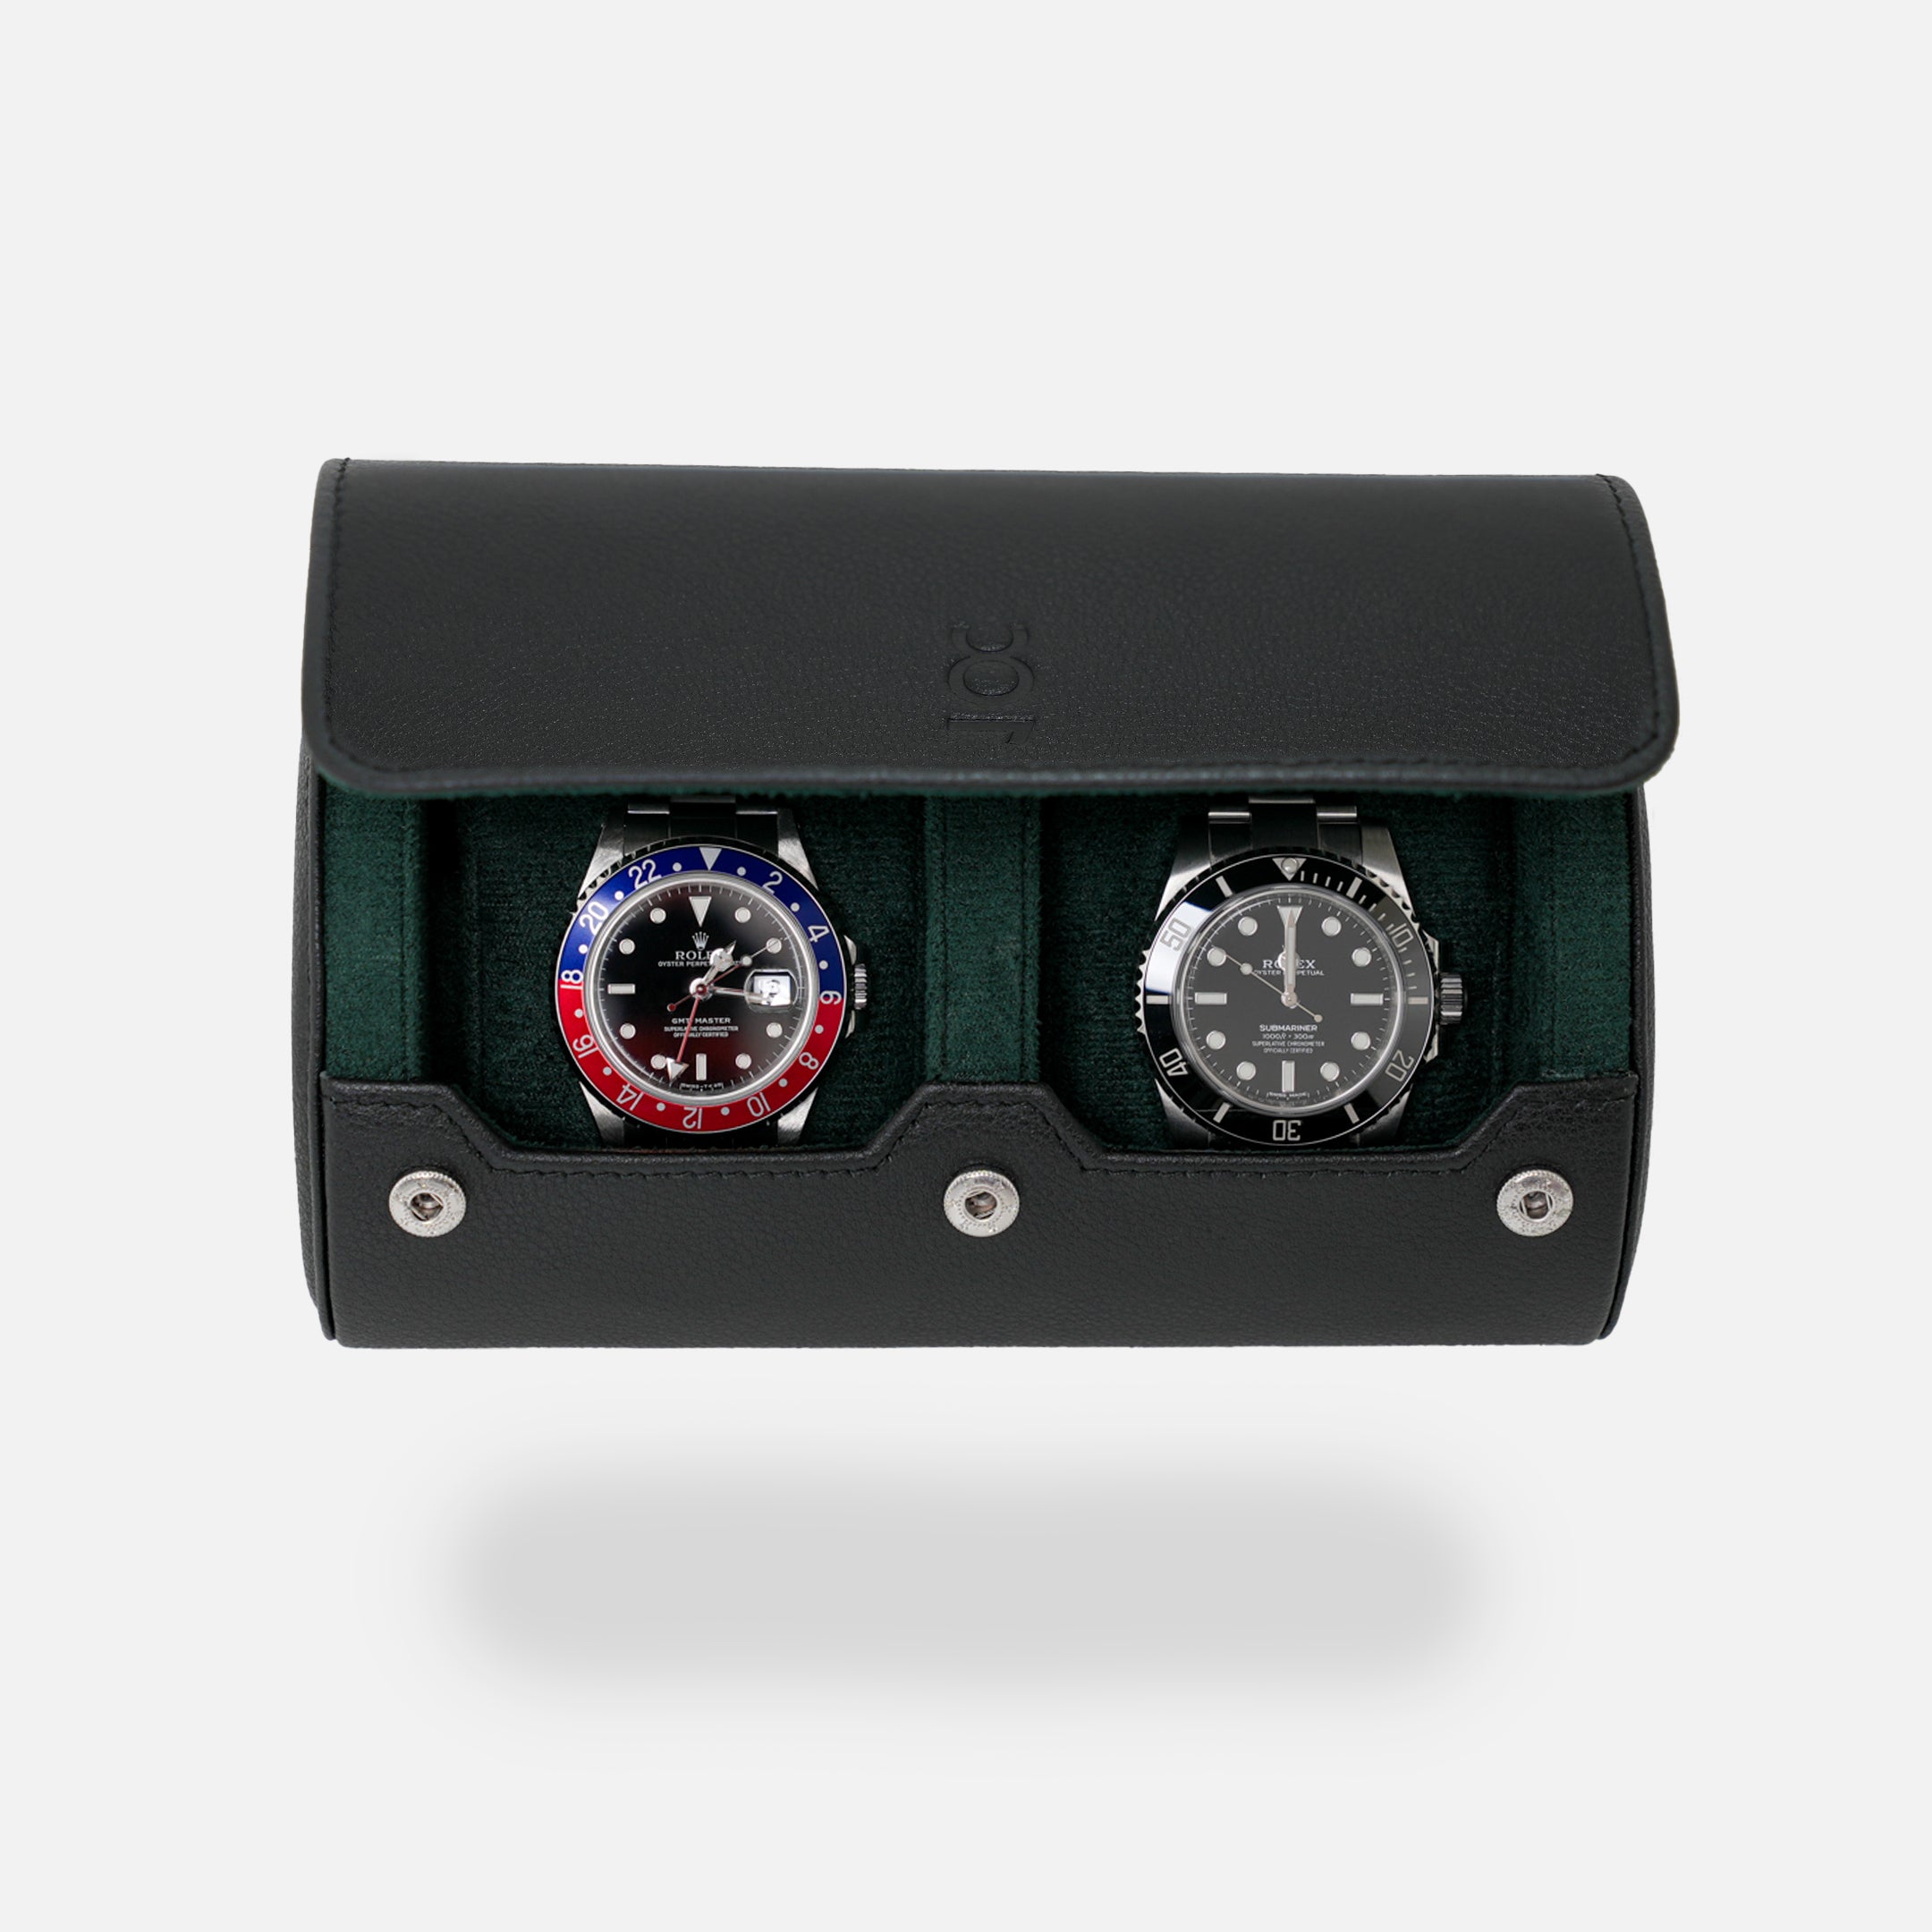 Uhrenrolle für zwei Uhren - Schwarz Grün